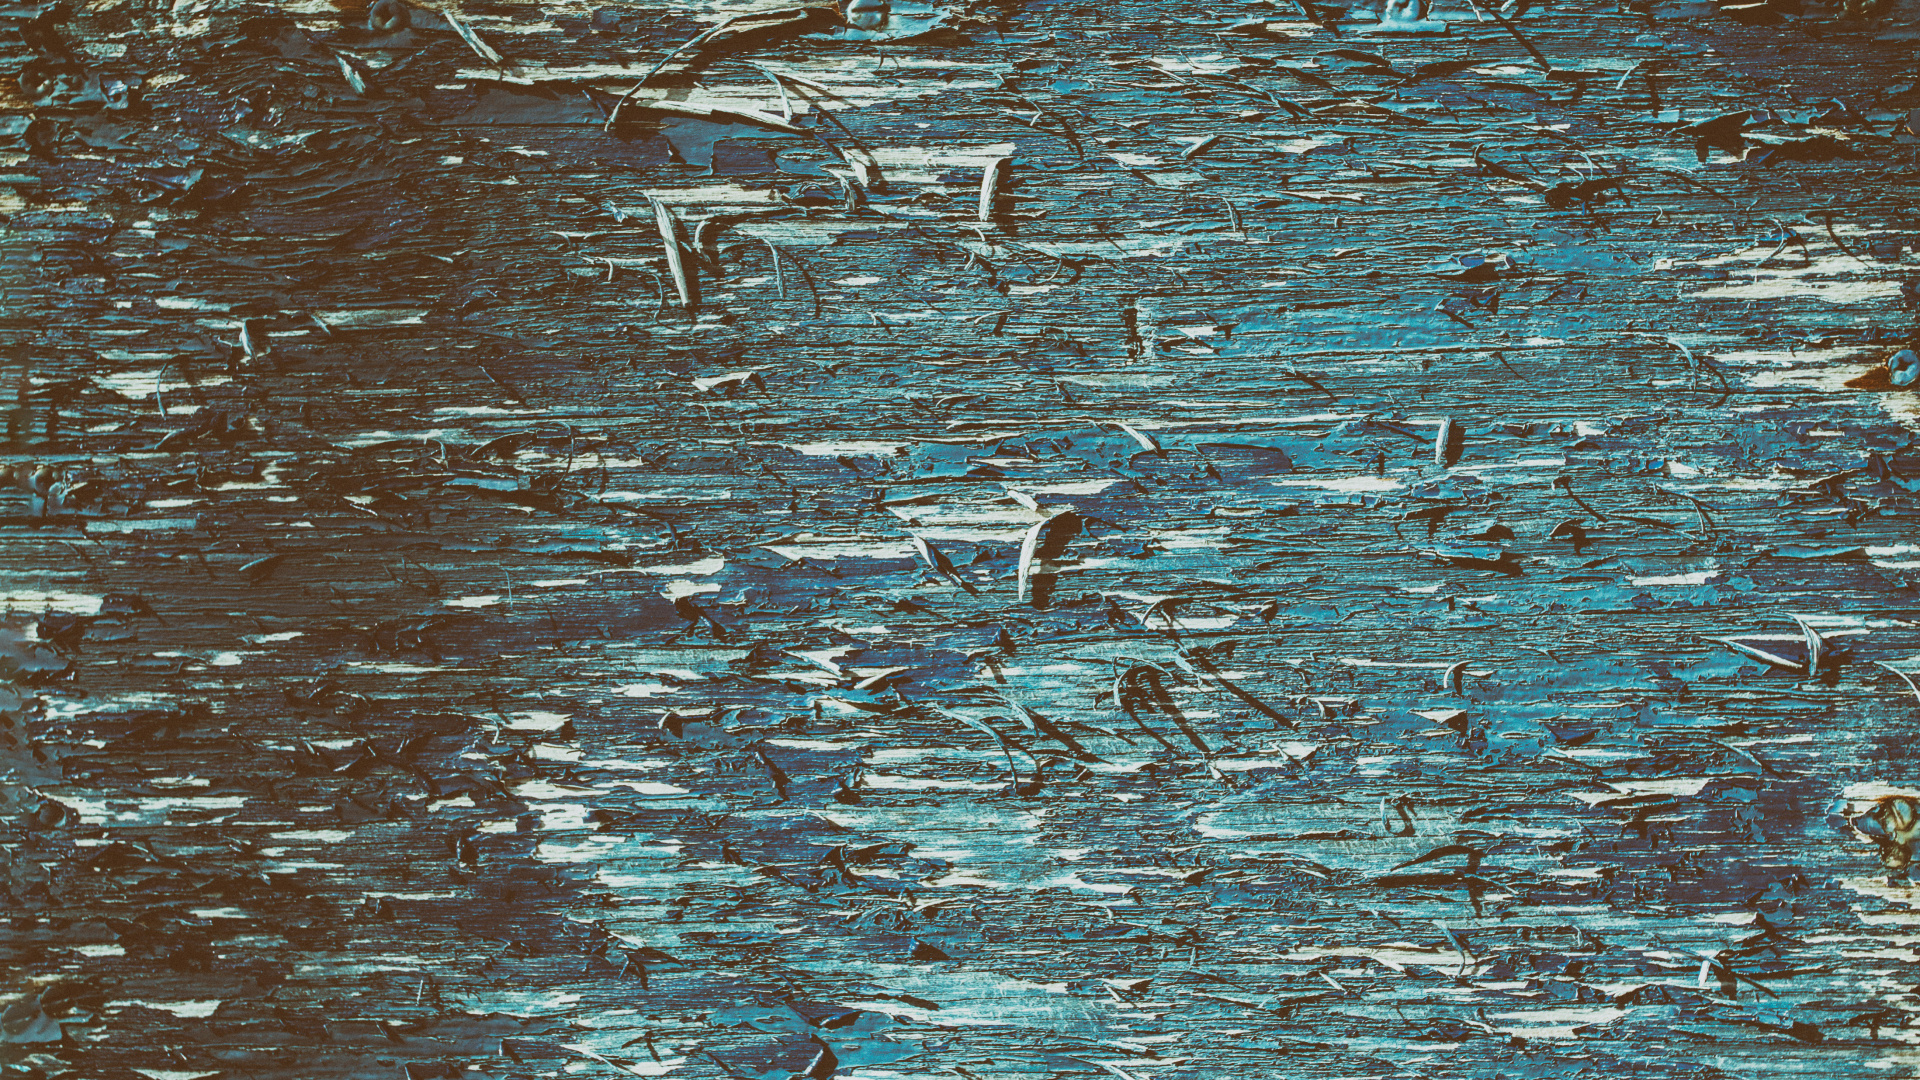 Oiseaux Blancs et Noirs Sur L'eau. Wallpaper in 1920x1080 Resolution